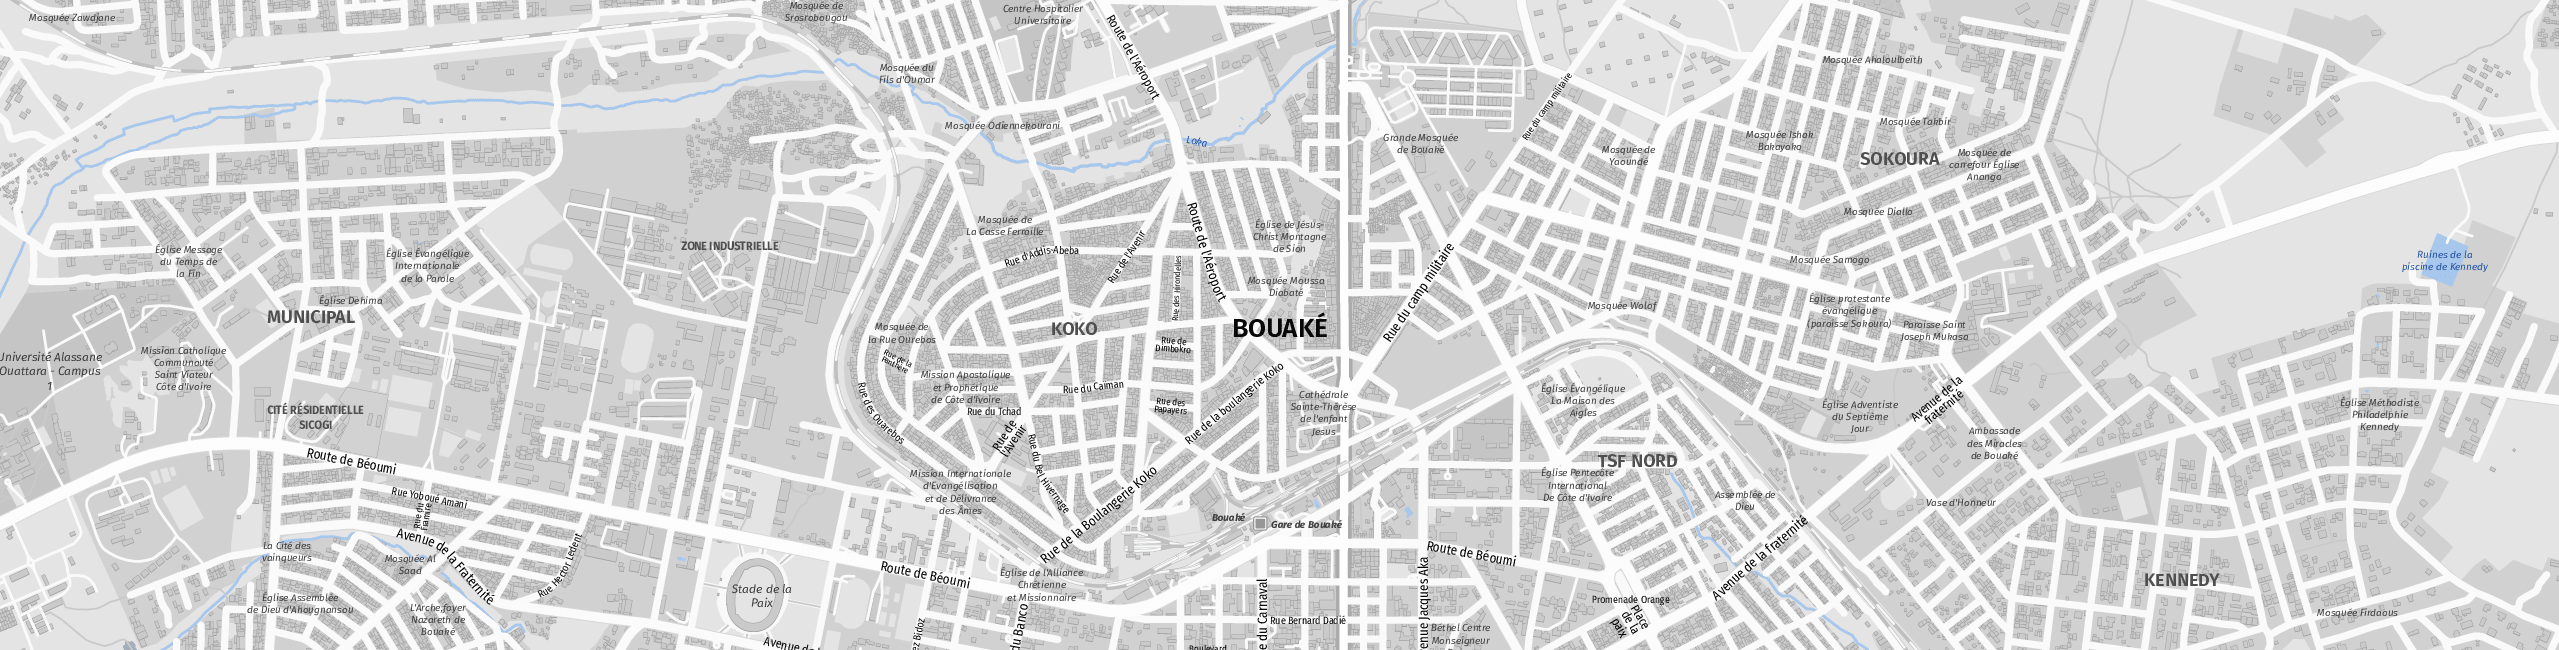 Stadtplan Bouaké zum Downloaden.